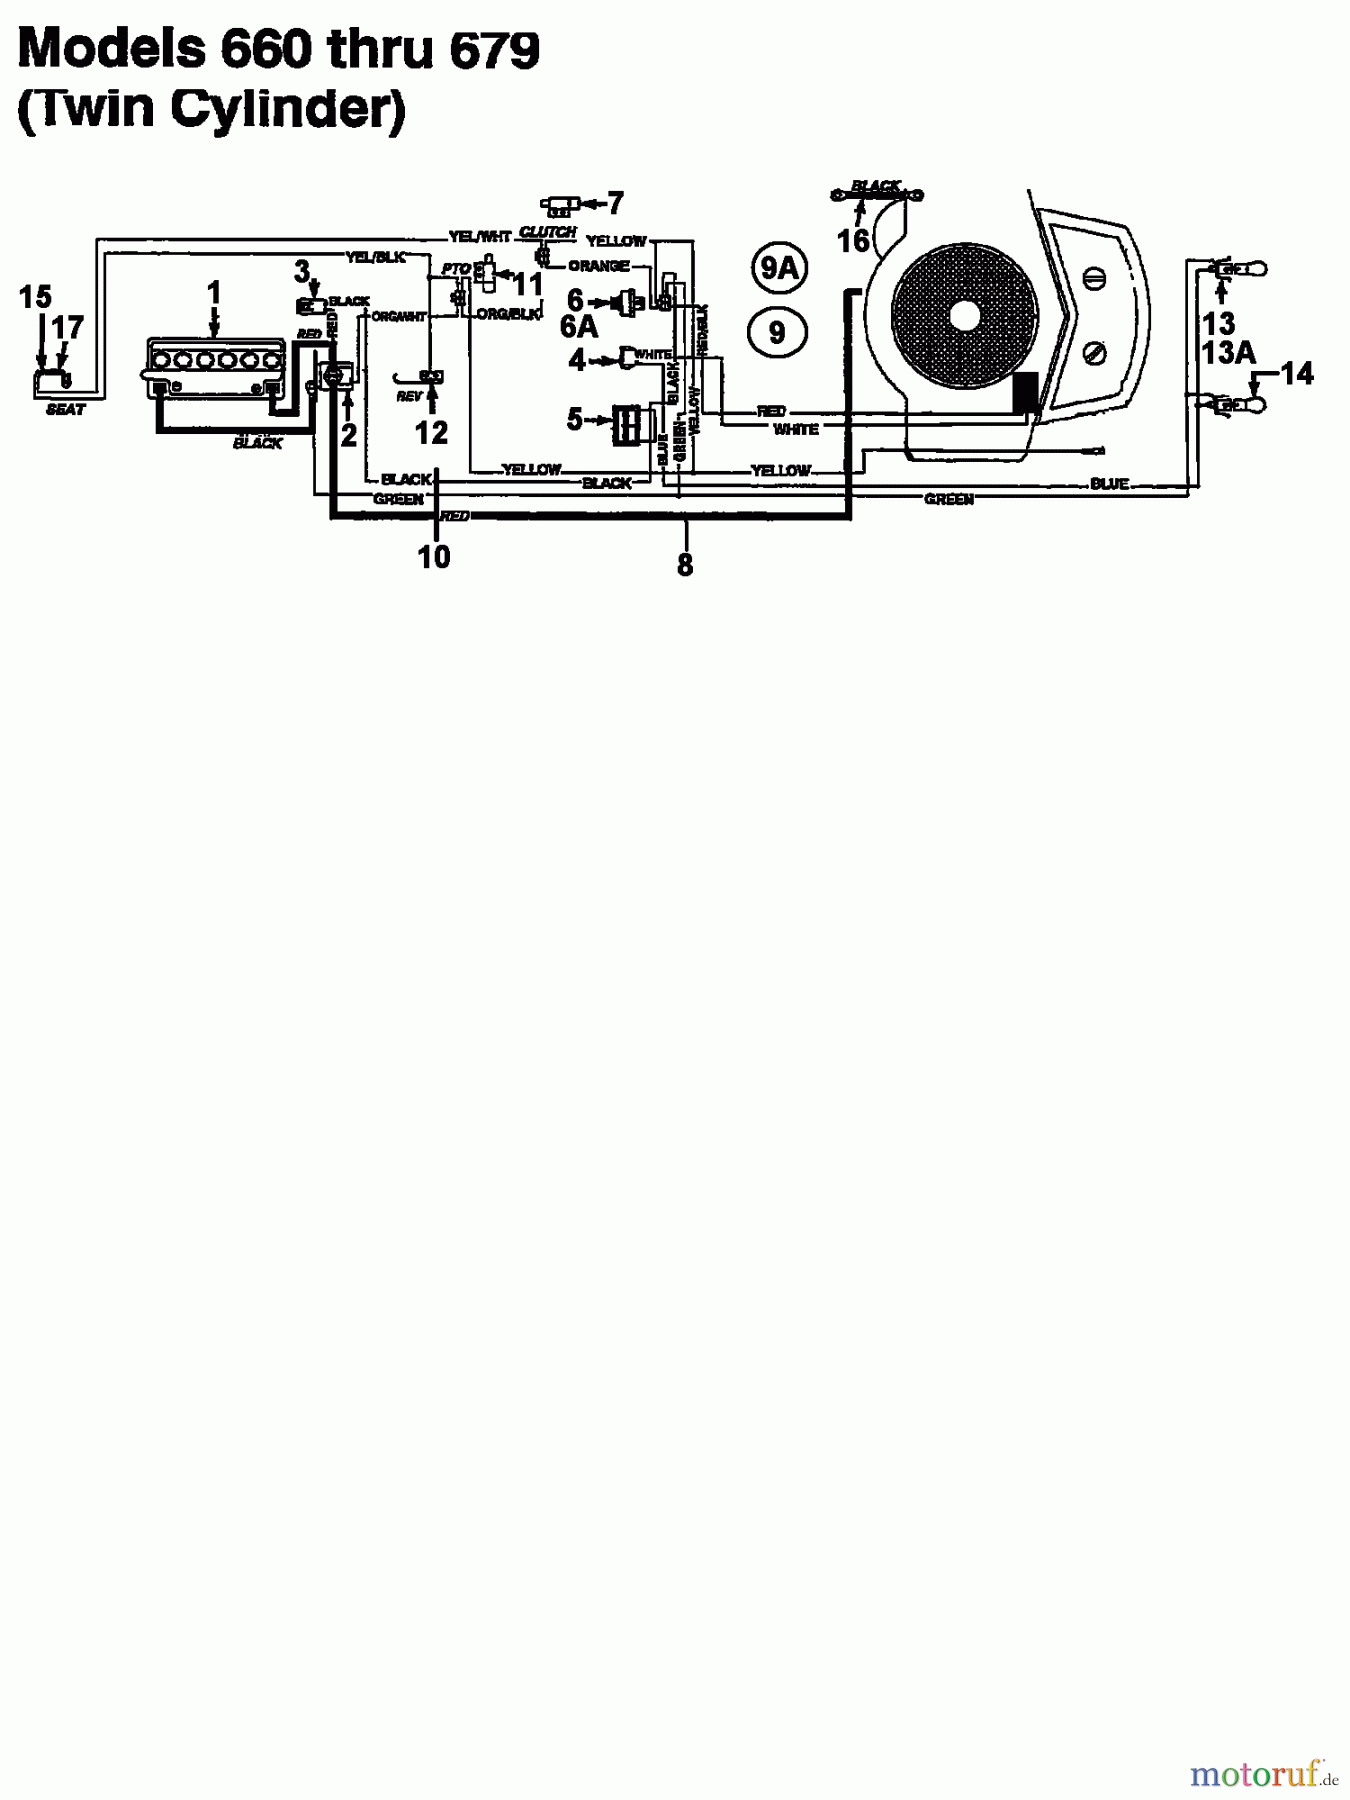  MTD Tracteurs de pelouse 11/30 133C679C600  (1993) Plan électrique 2 cylindre